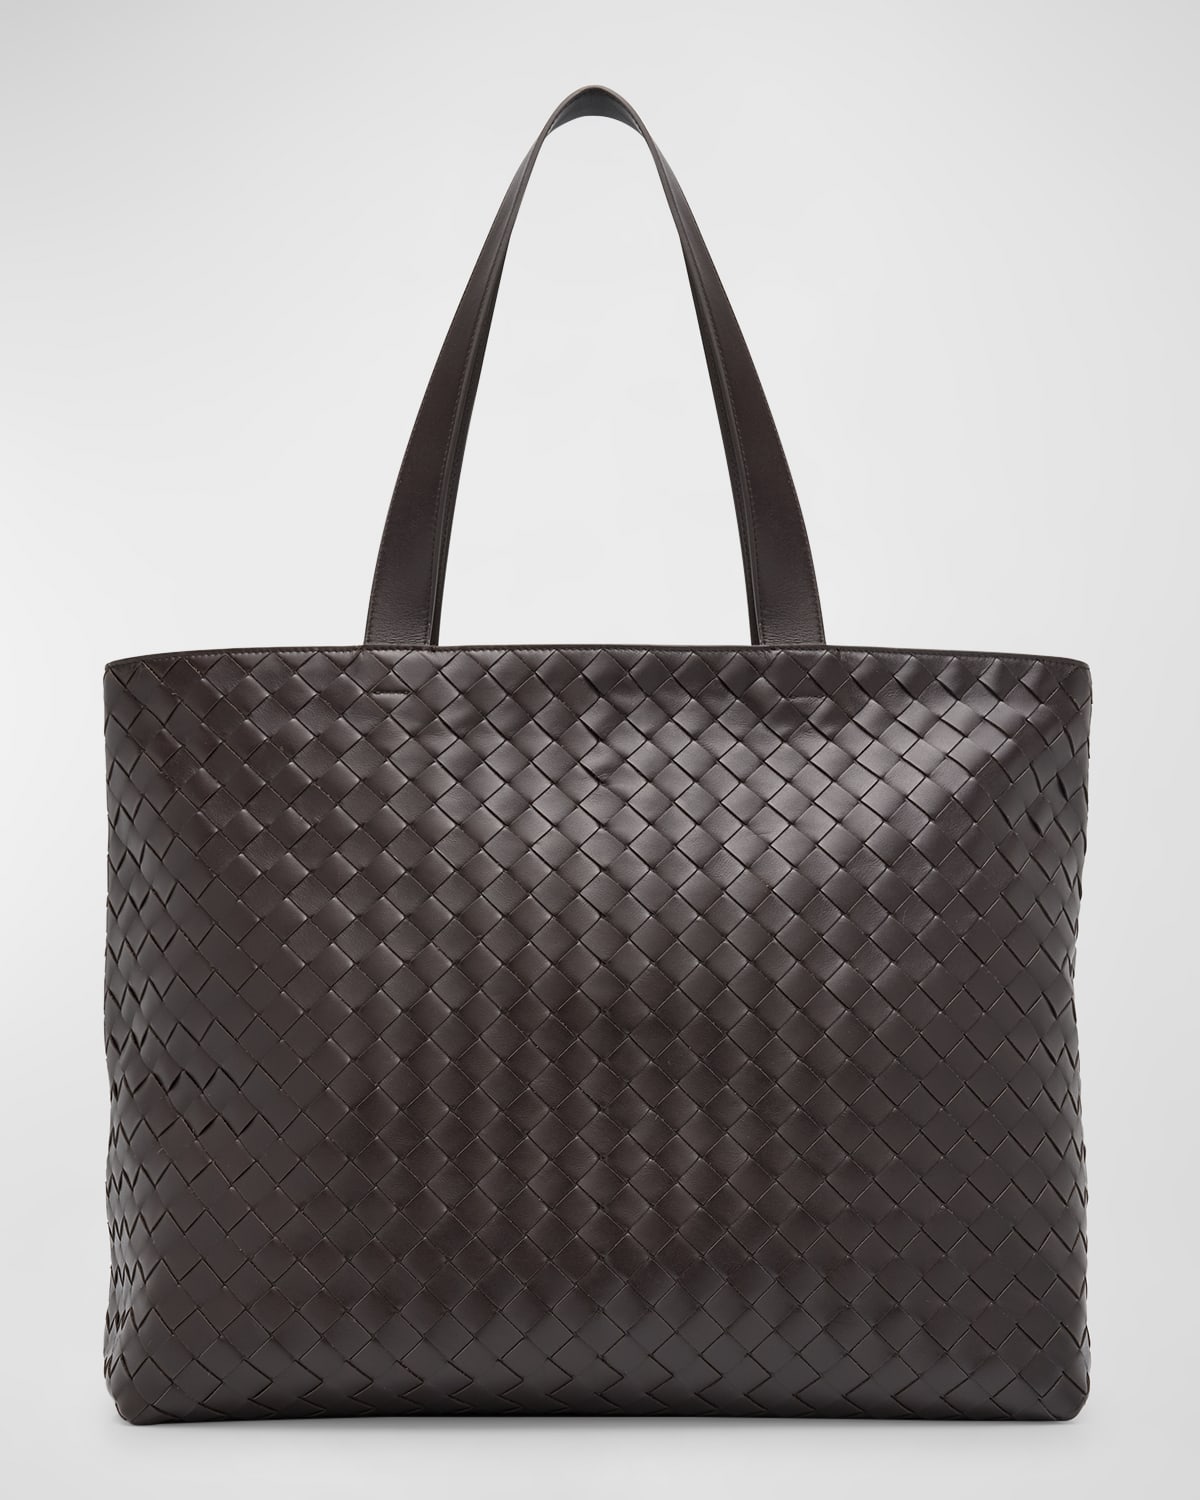 Shop Bottega Veneta Men's Large Intrecciato Leather Tote Bag In Silvernat.